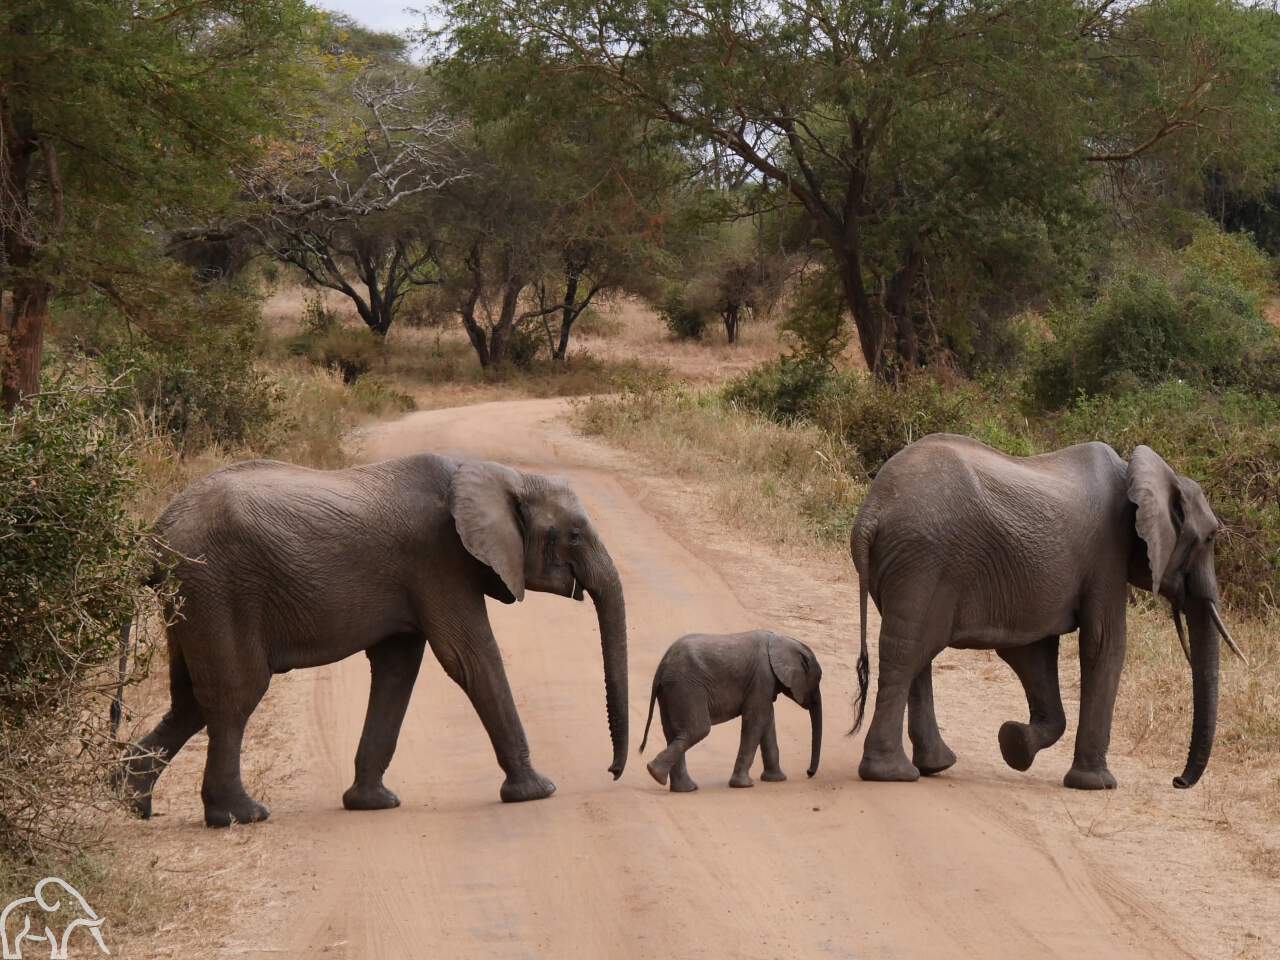 Overstekende olifanten met in het midden een klein olifantje. Ze lopen de weg over in Tarangire National Park en gasten van droomreis tanzania kwamen ze tegen tijdens hun safari